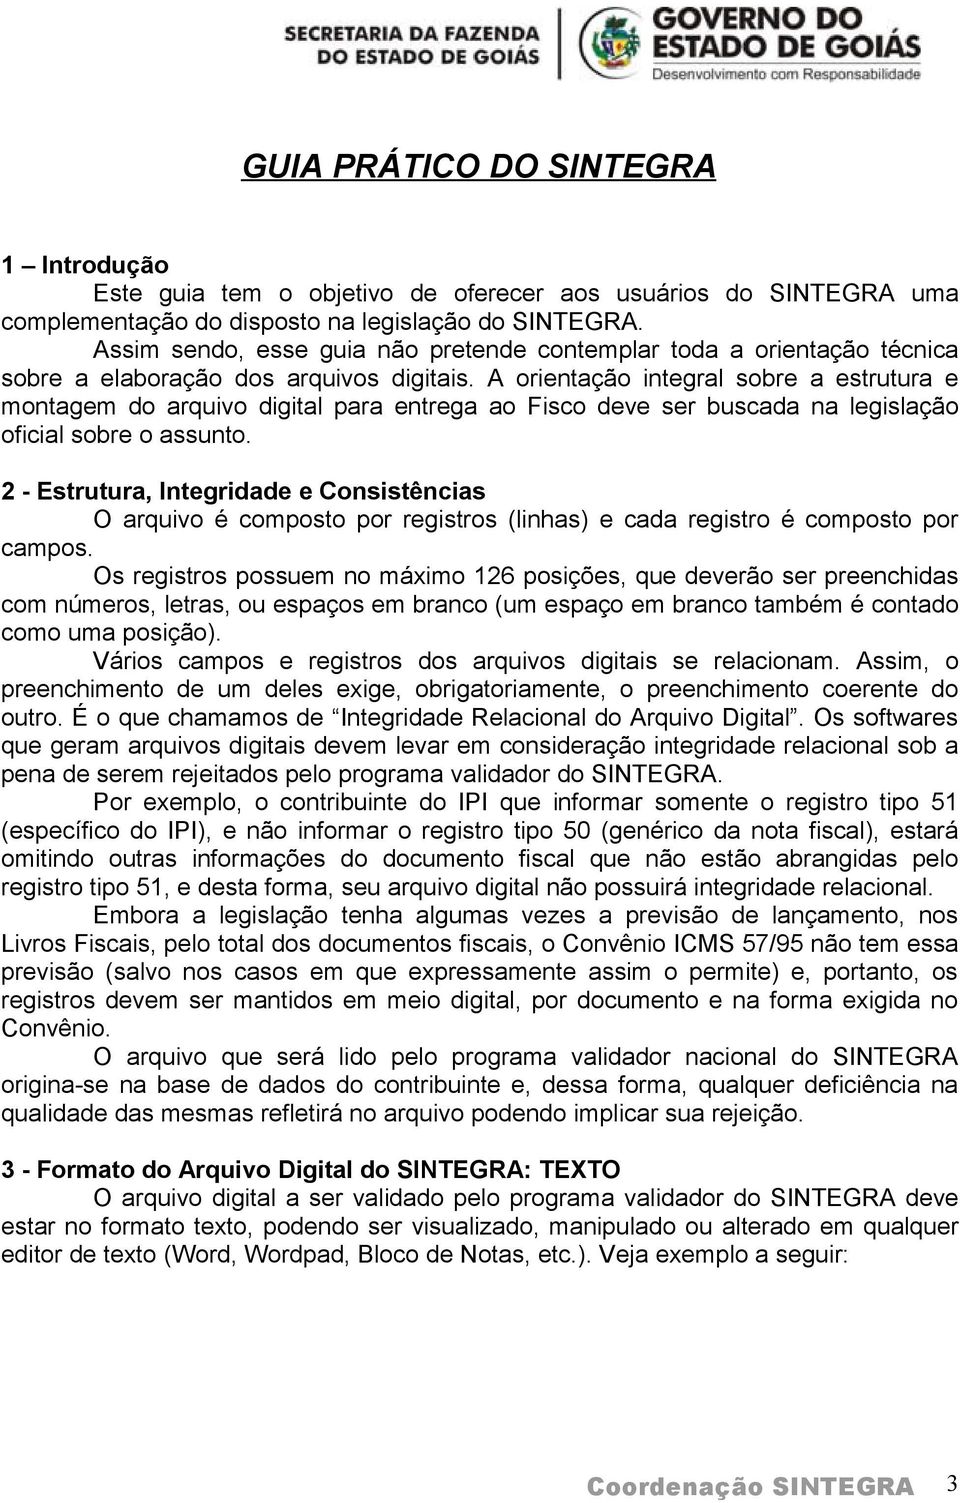 A orientação integral sobre a estrutura e montagem do arquivo digital para entrega ao Fisco deve ser buscada na legislação oficial sobre o assunto.